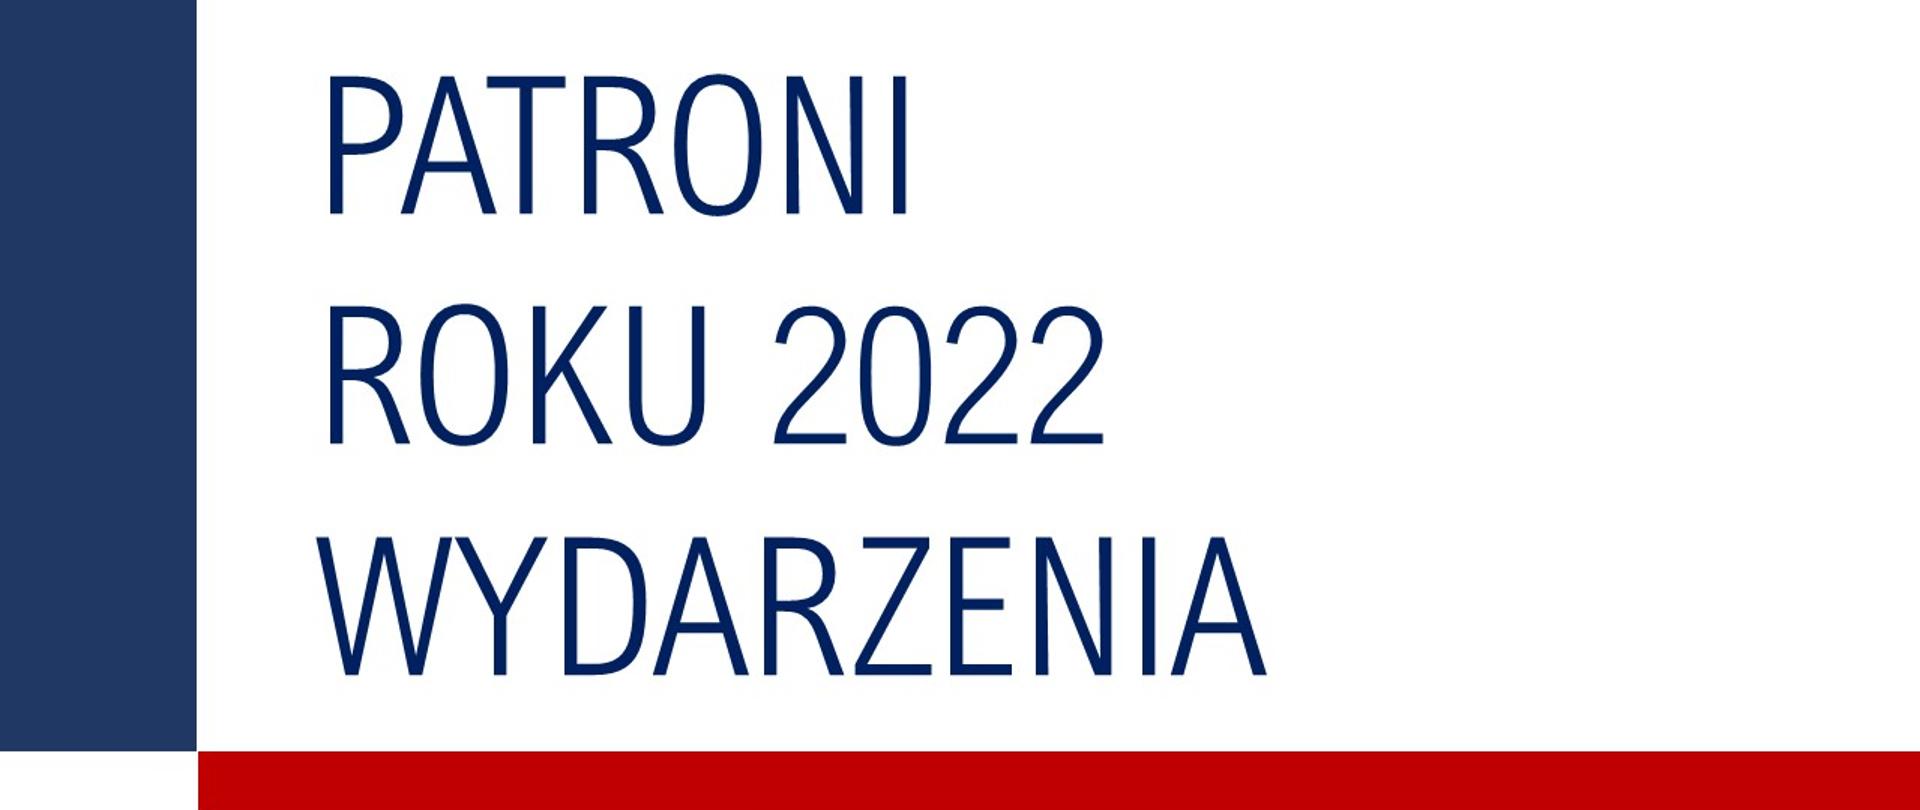 Patroni roku 2022 - wydarzenia